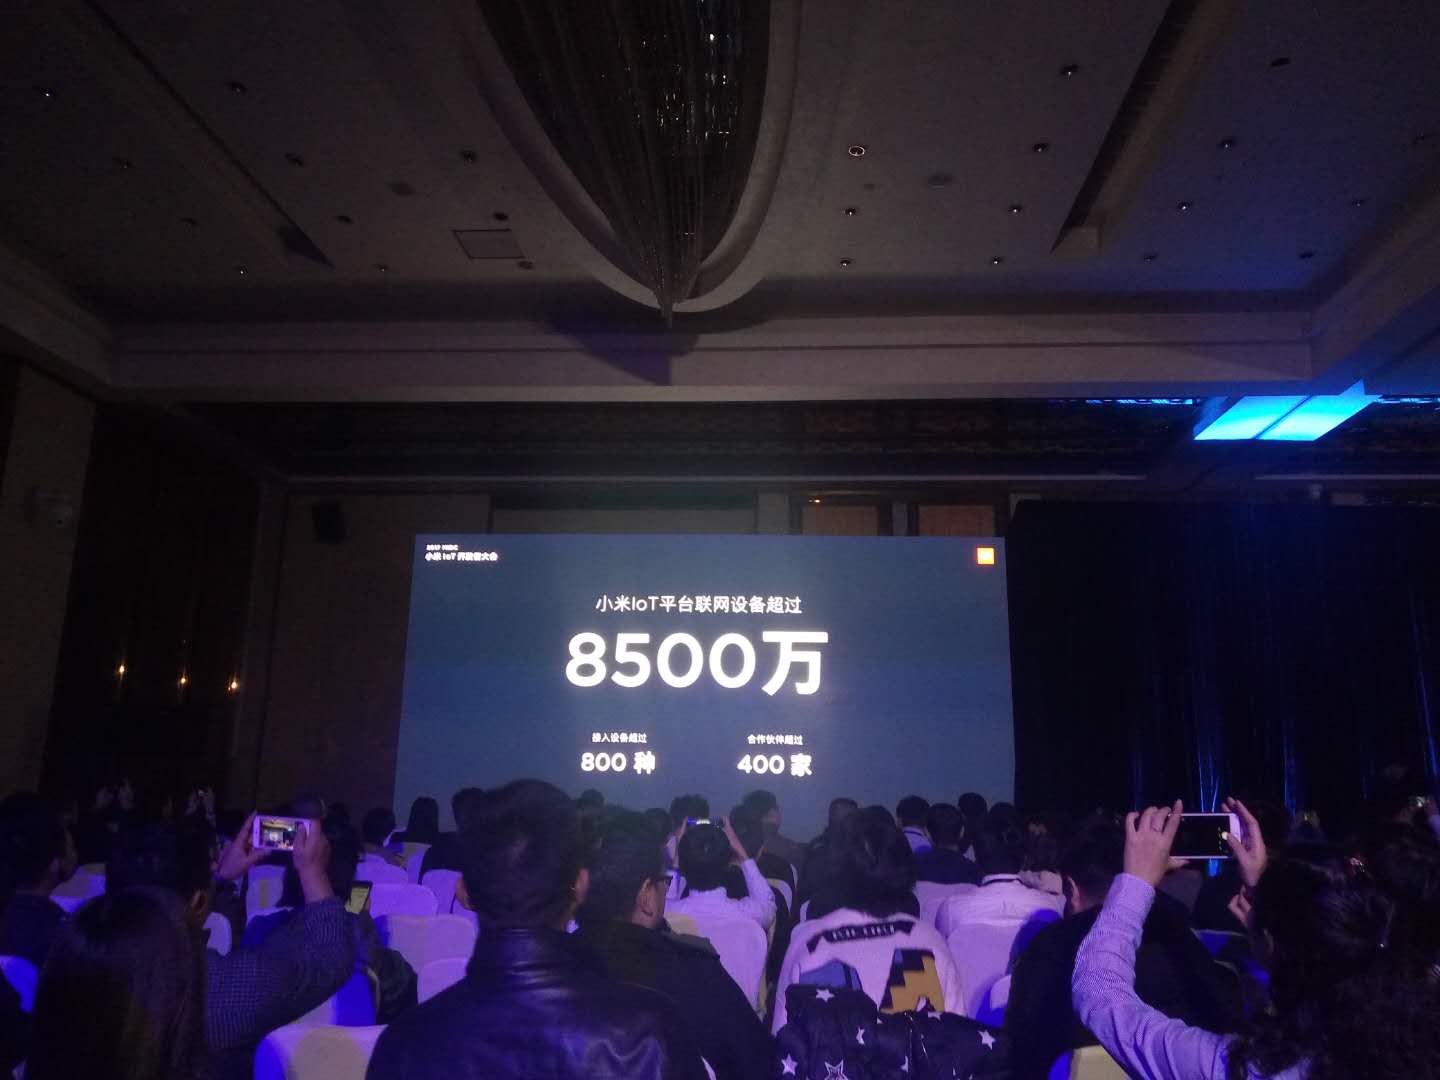 小米IoT平台联网设备超过8500万 成全球最大IoT平台